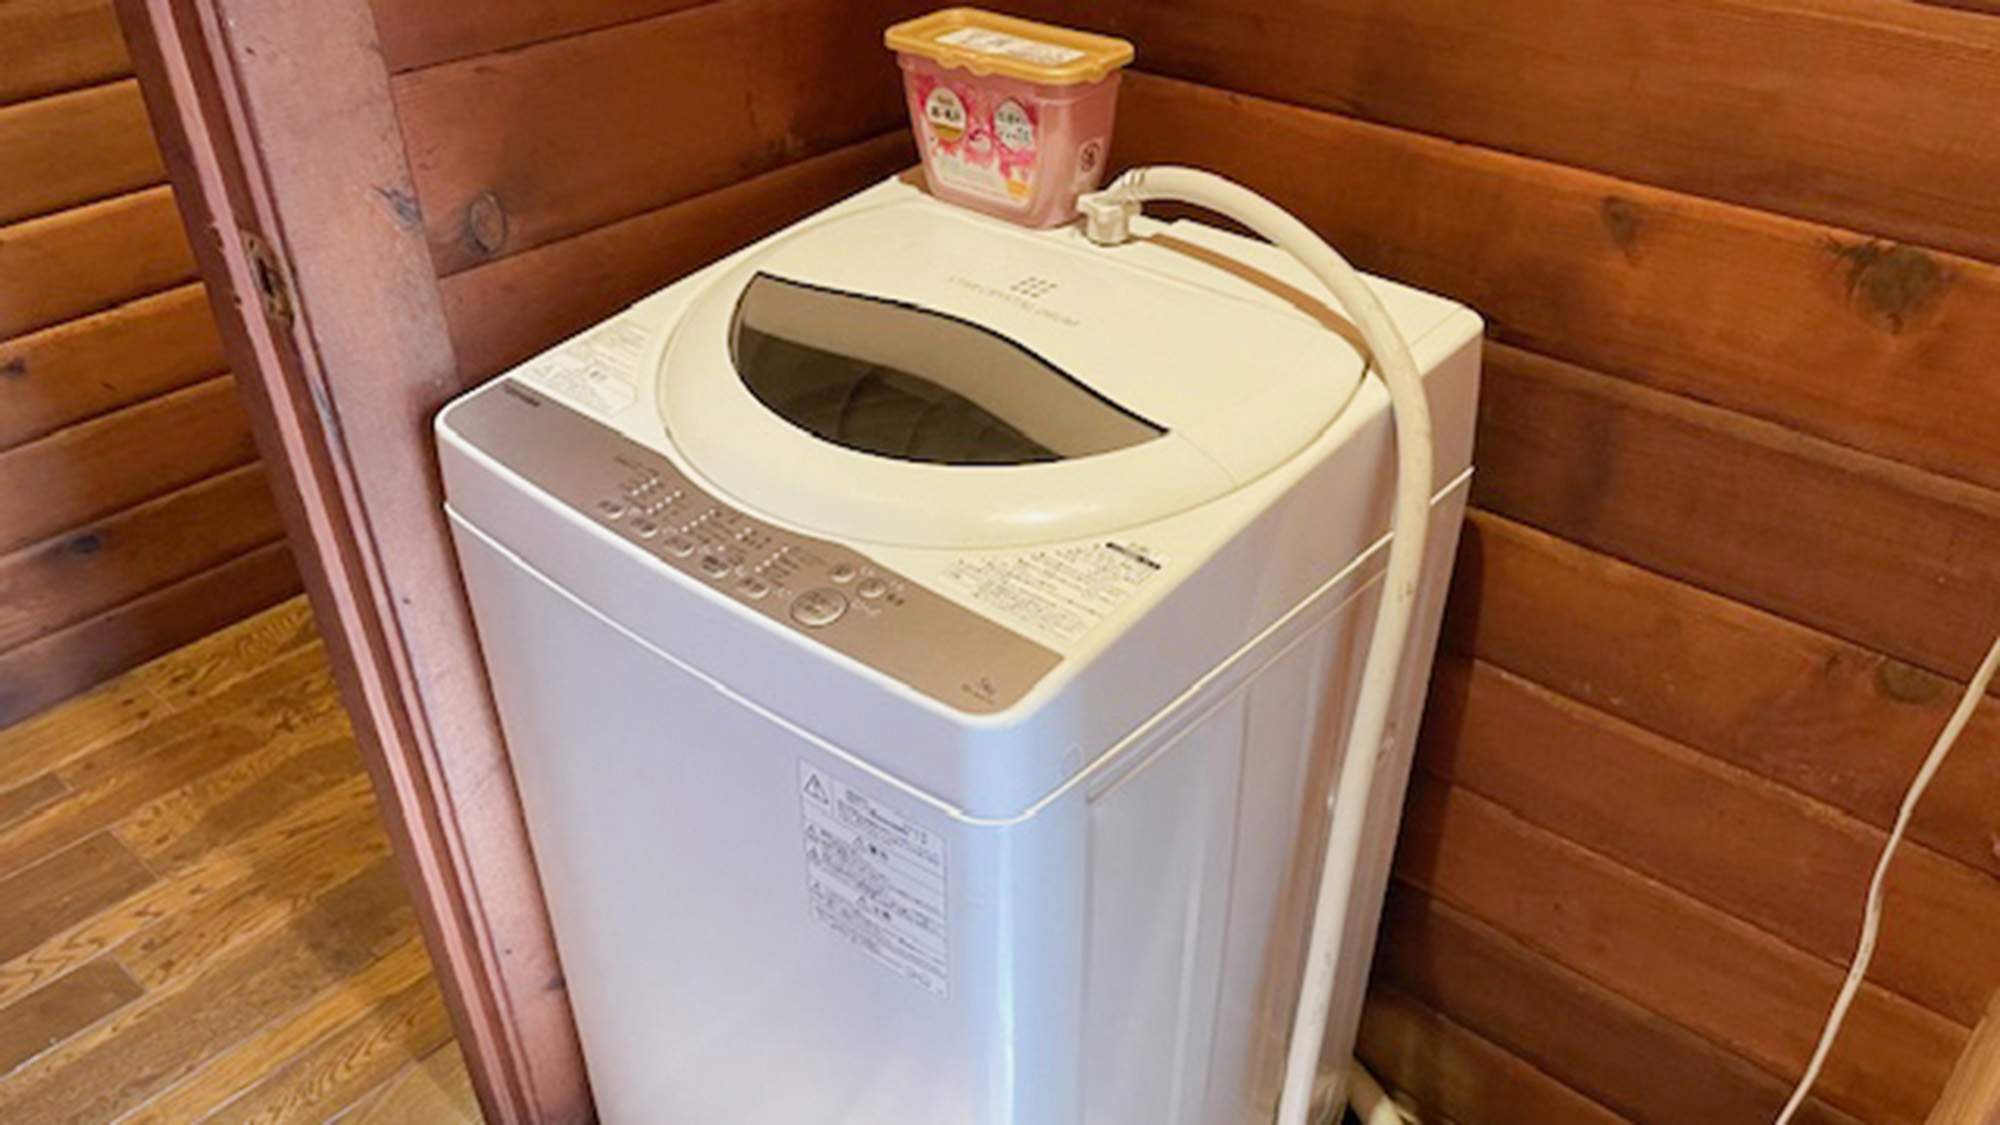 ・【洗濯機】洗濯機と洗濯用洗剤をご用意。長期滞在時に便利です